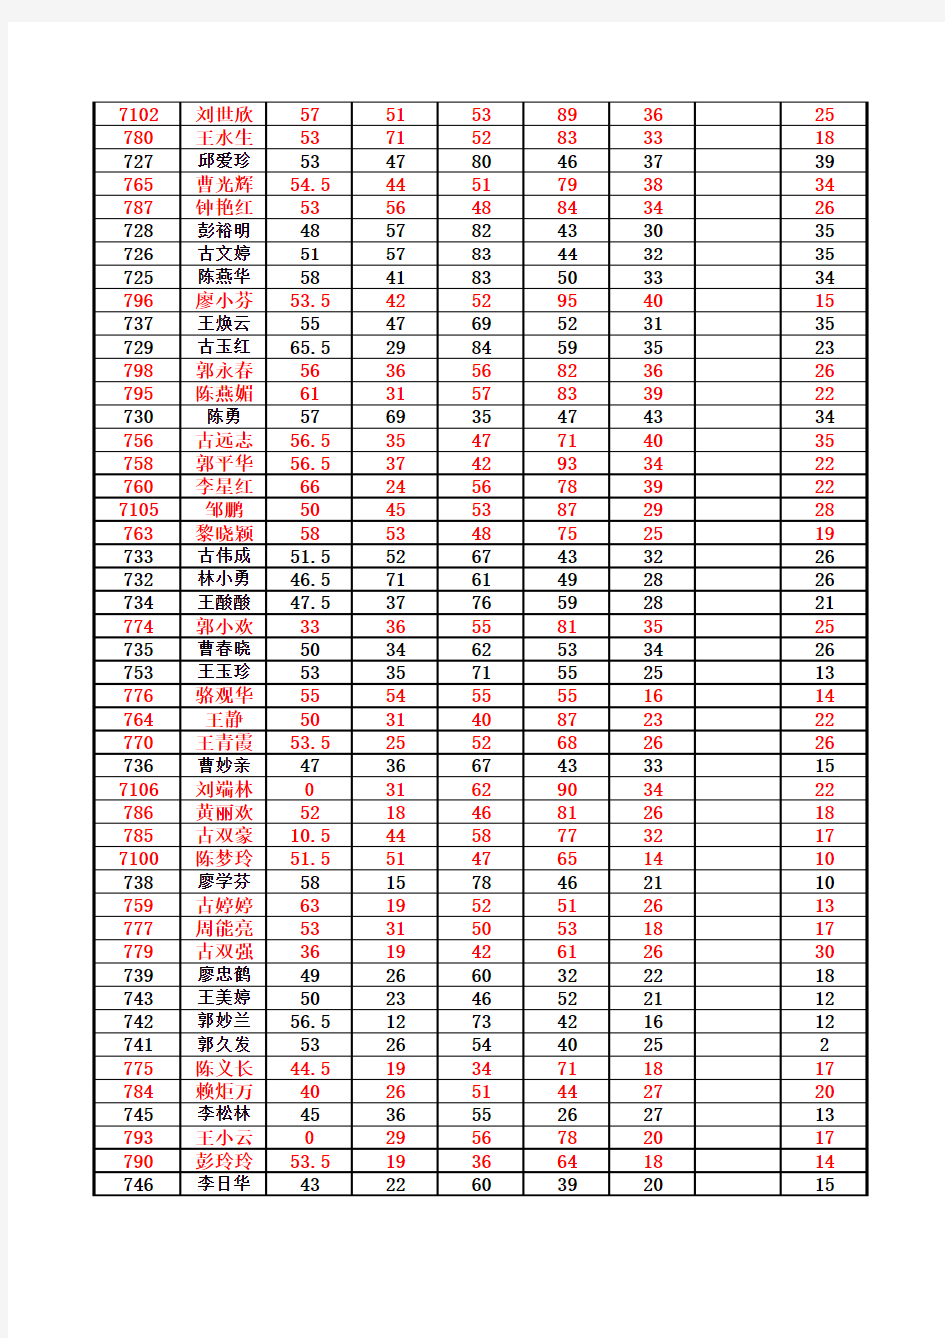 戴家埔中学2013年下半年期末考试学生成绩统计表(正式)